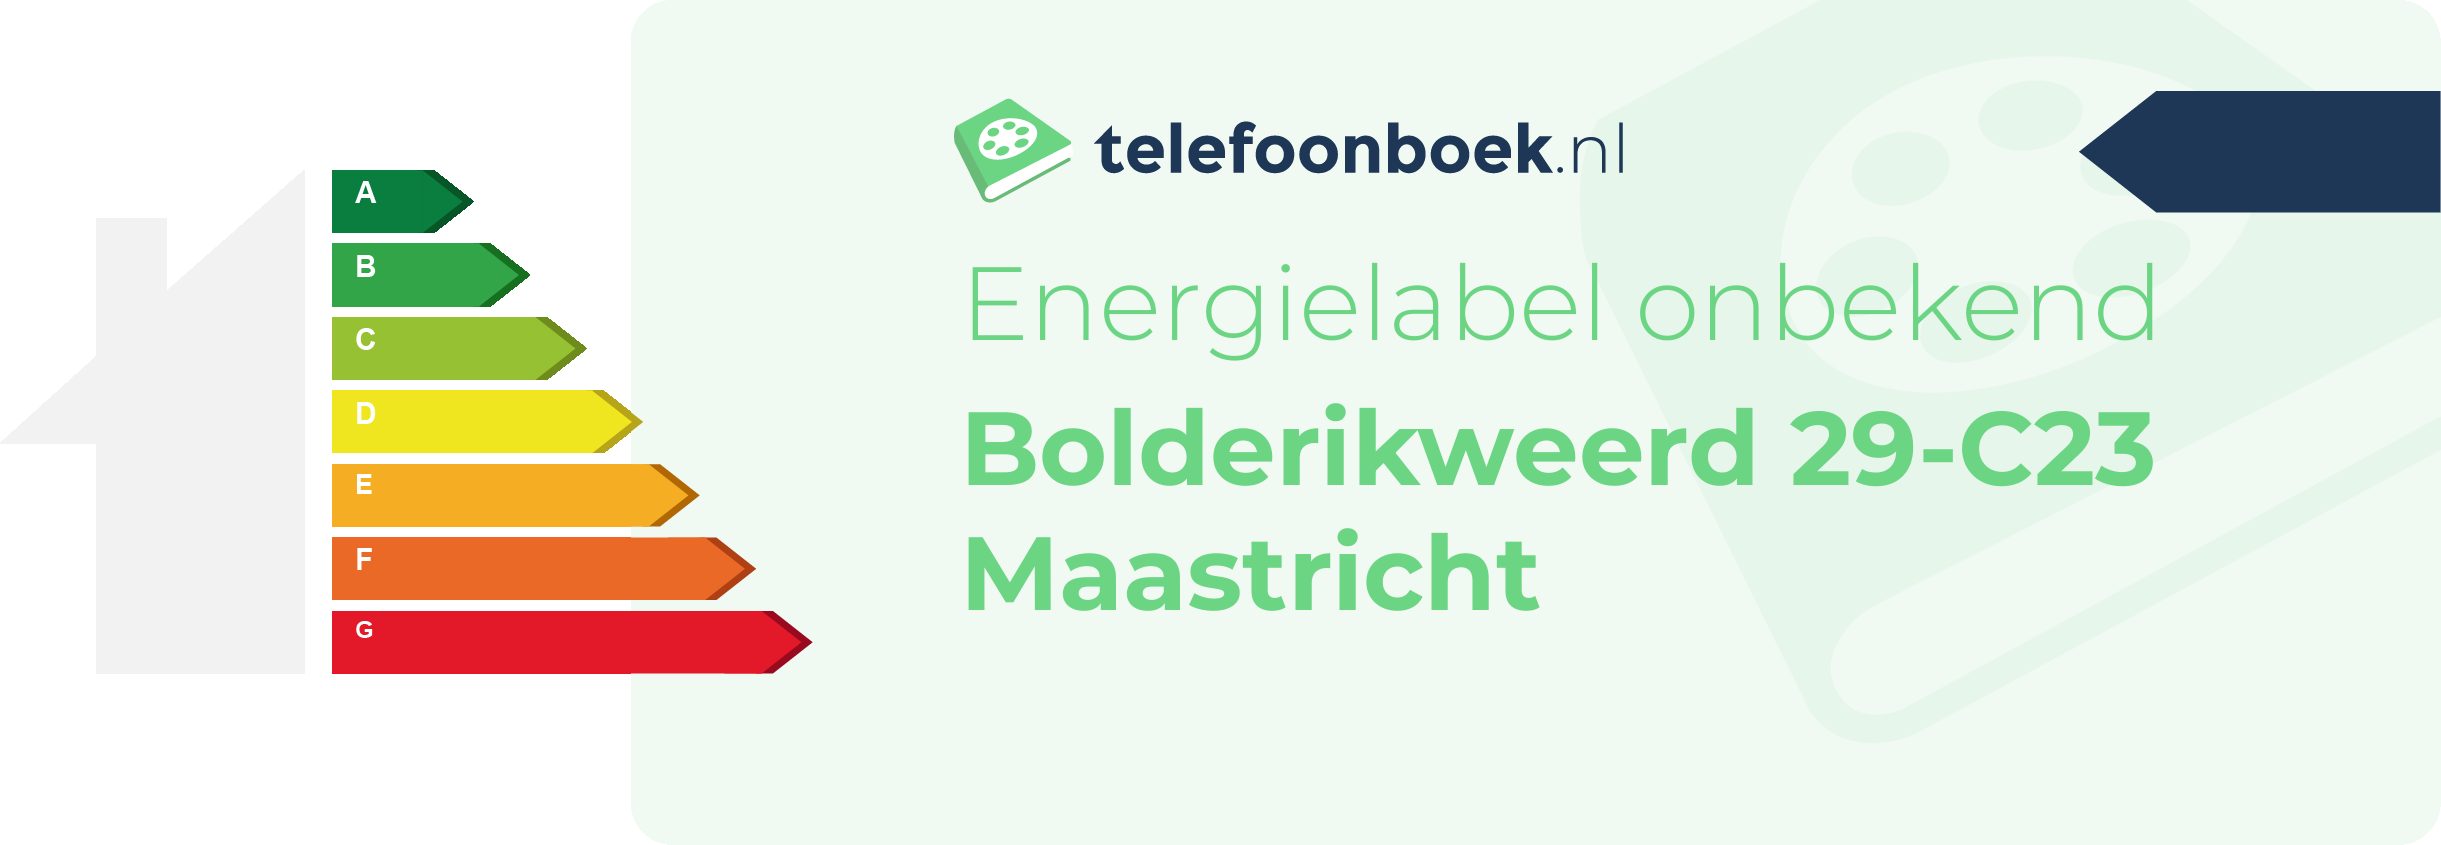 Energielabel Bolderikweerd 29-C23 Maastricht